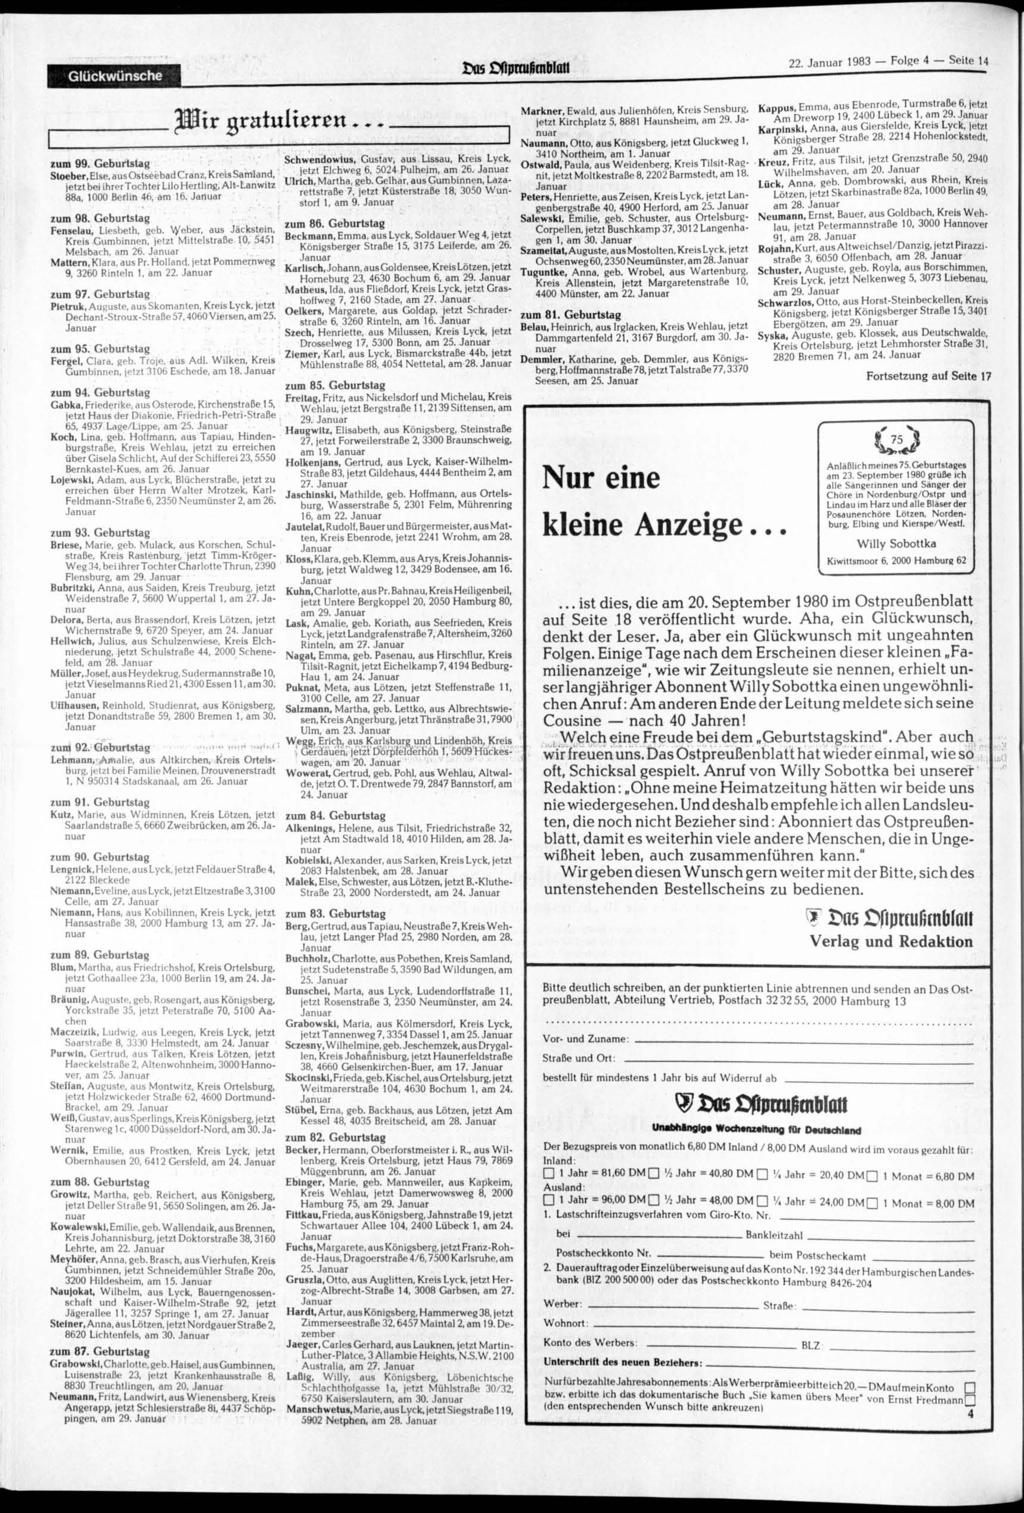 Glückwünsche w ftpmi (nblatt 22. 1983 Folge 4 Seite 14 zum 99. Geburtstag Stoeber, Else, aus Ostseebad Cranz, Kreis Samland, jetzt bei ihrertochterlilohertling, Alt-Lanwitz 88a, 1000 Berlin 46, am 16.